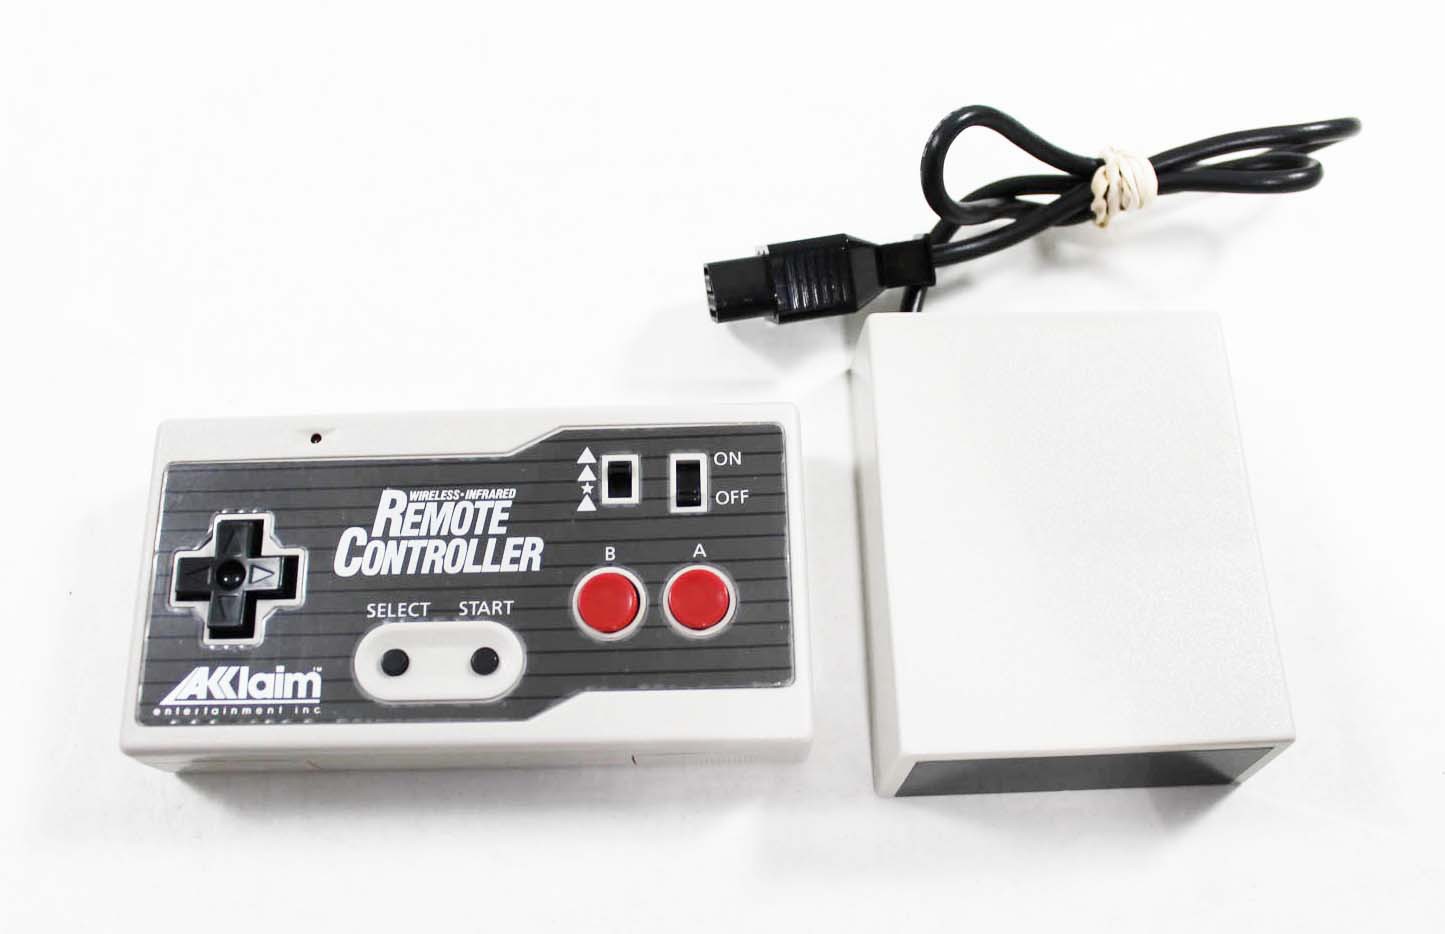 Akklaim Wireless NES Controller - Nintendo NES Hardware